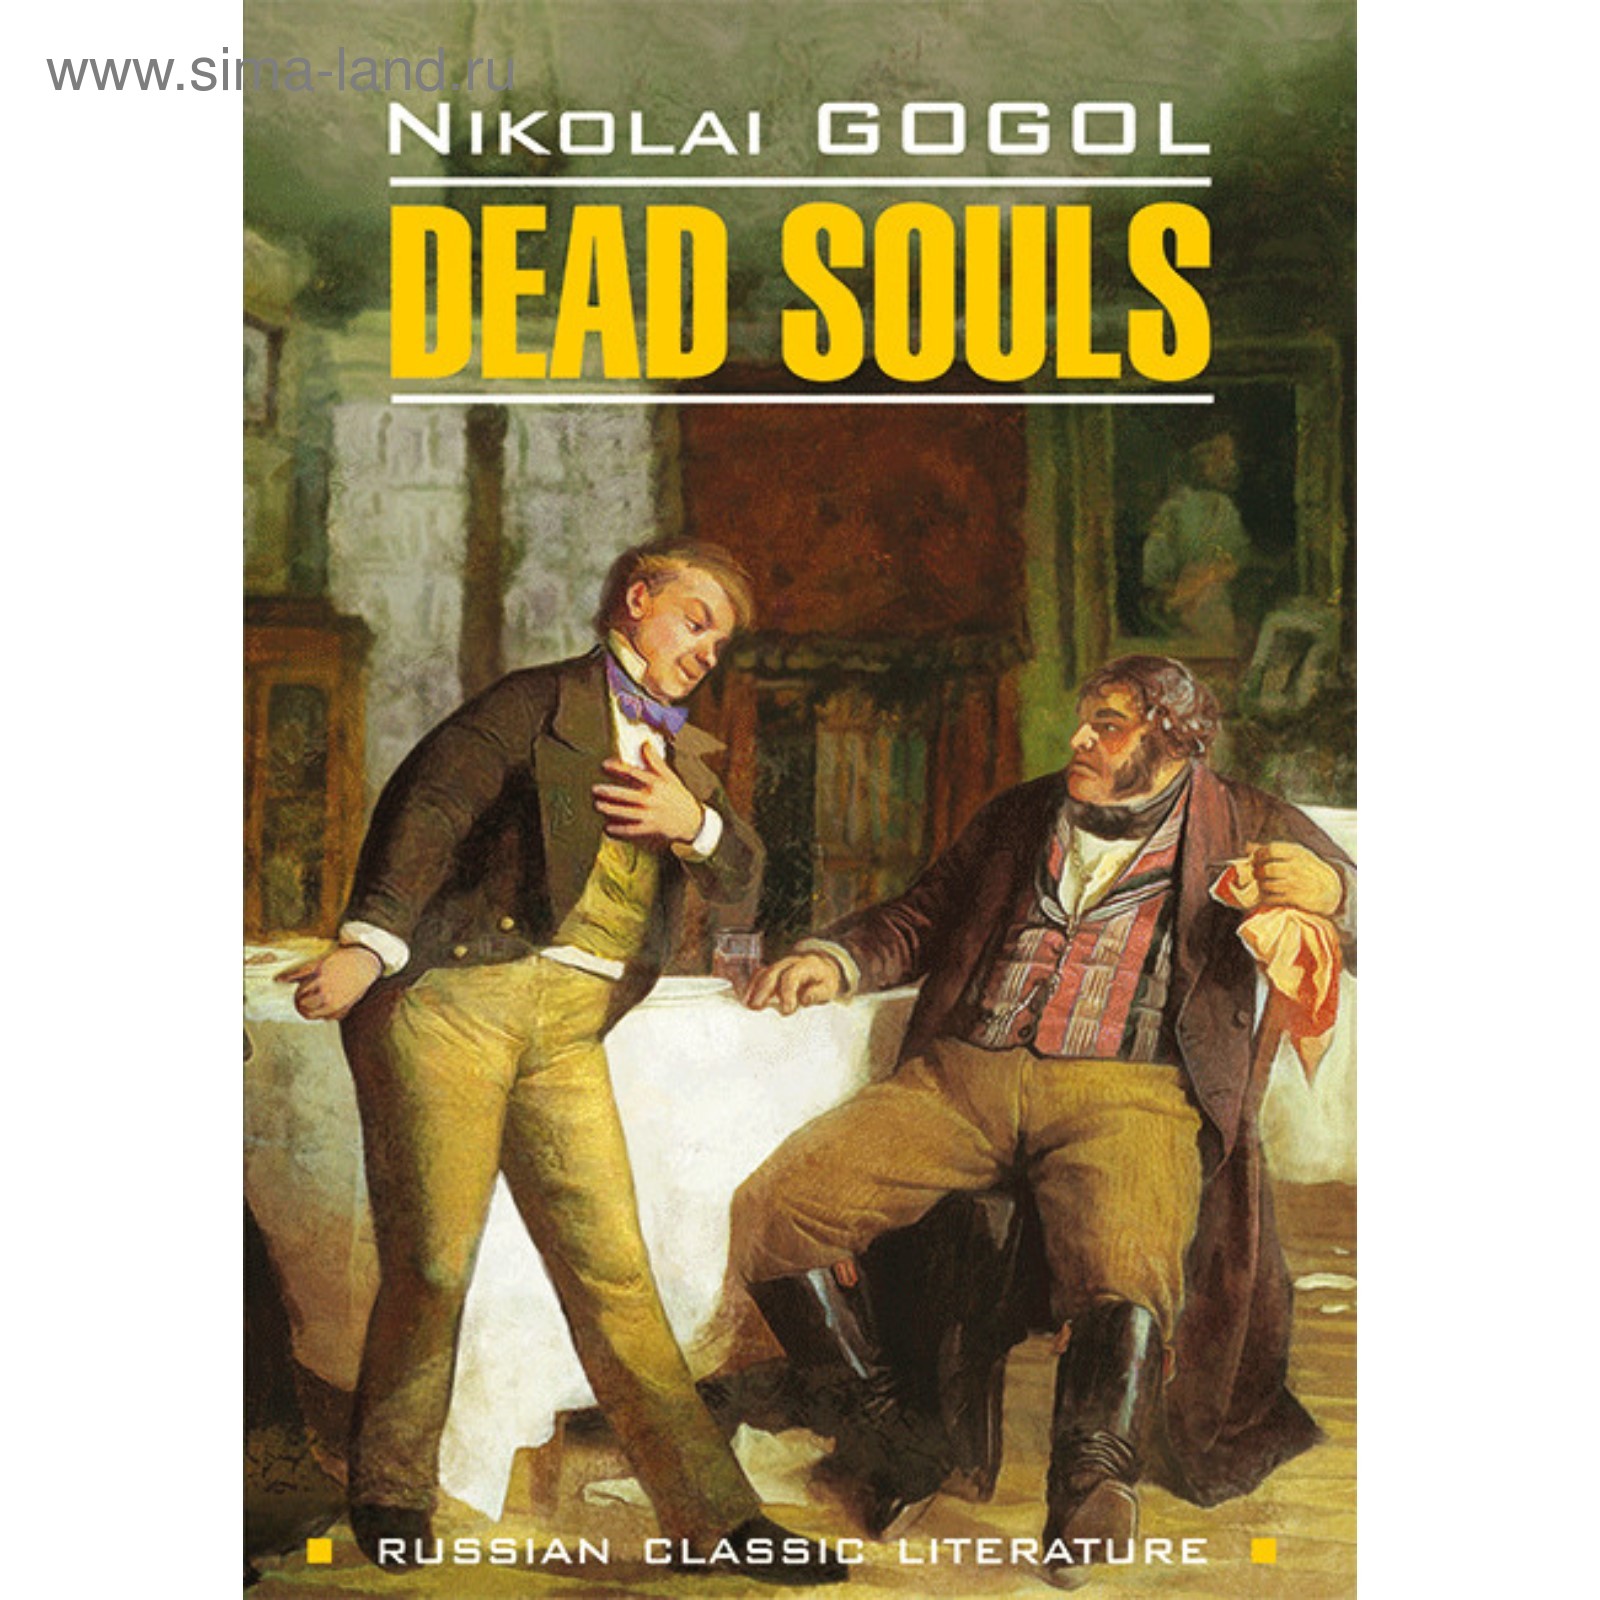 Русская душа на английском. Gogol Nikolai "Dead Souls". Гоголь мертвые души книга. Мертвые души книга.